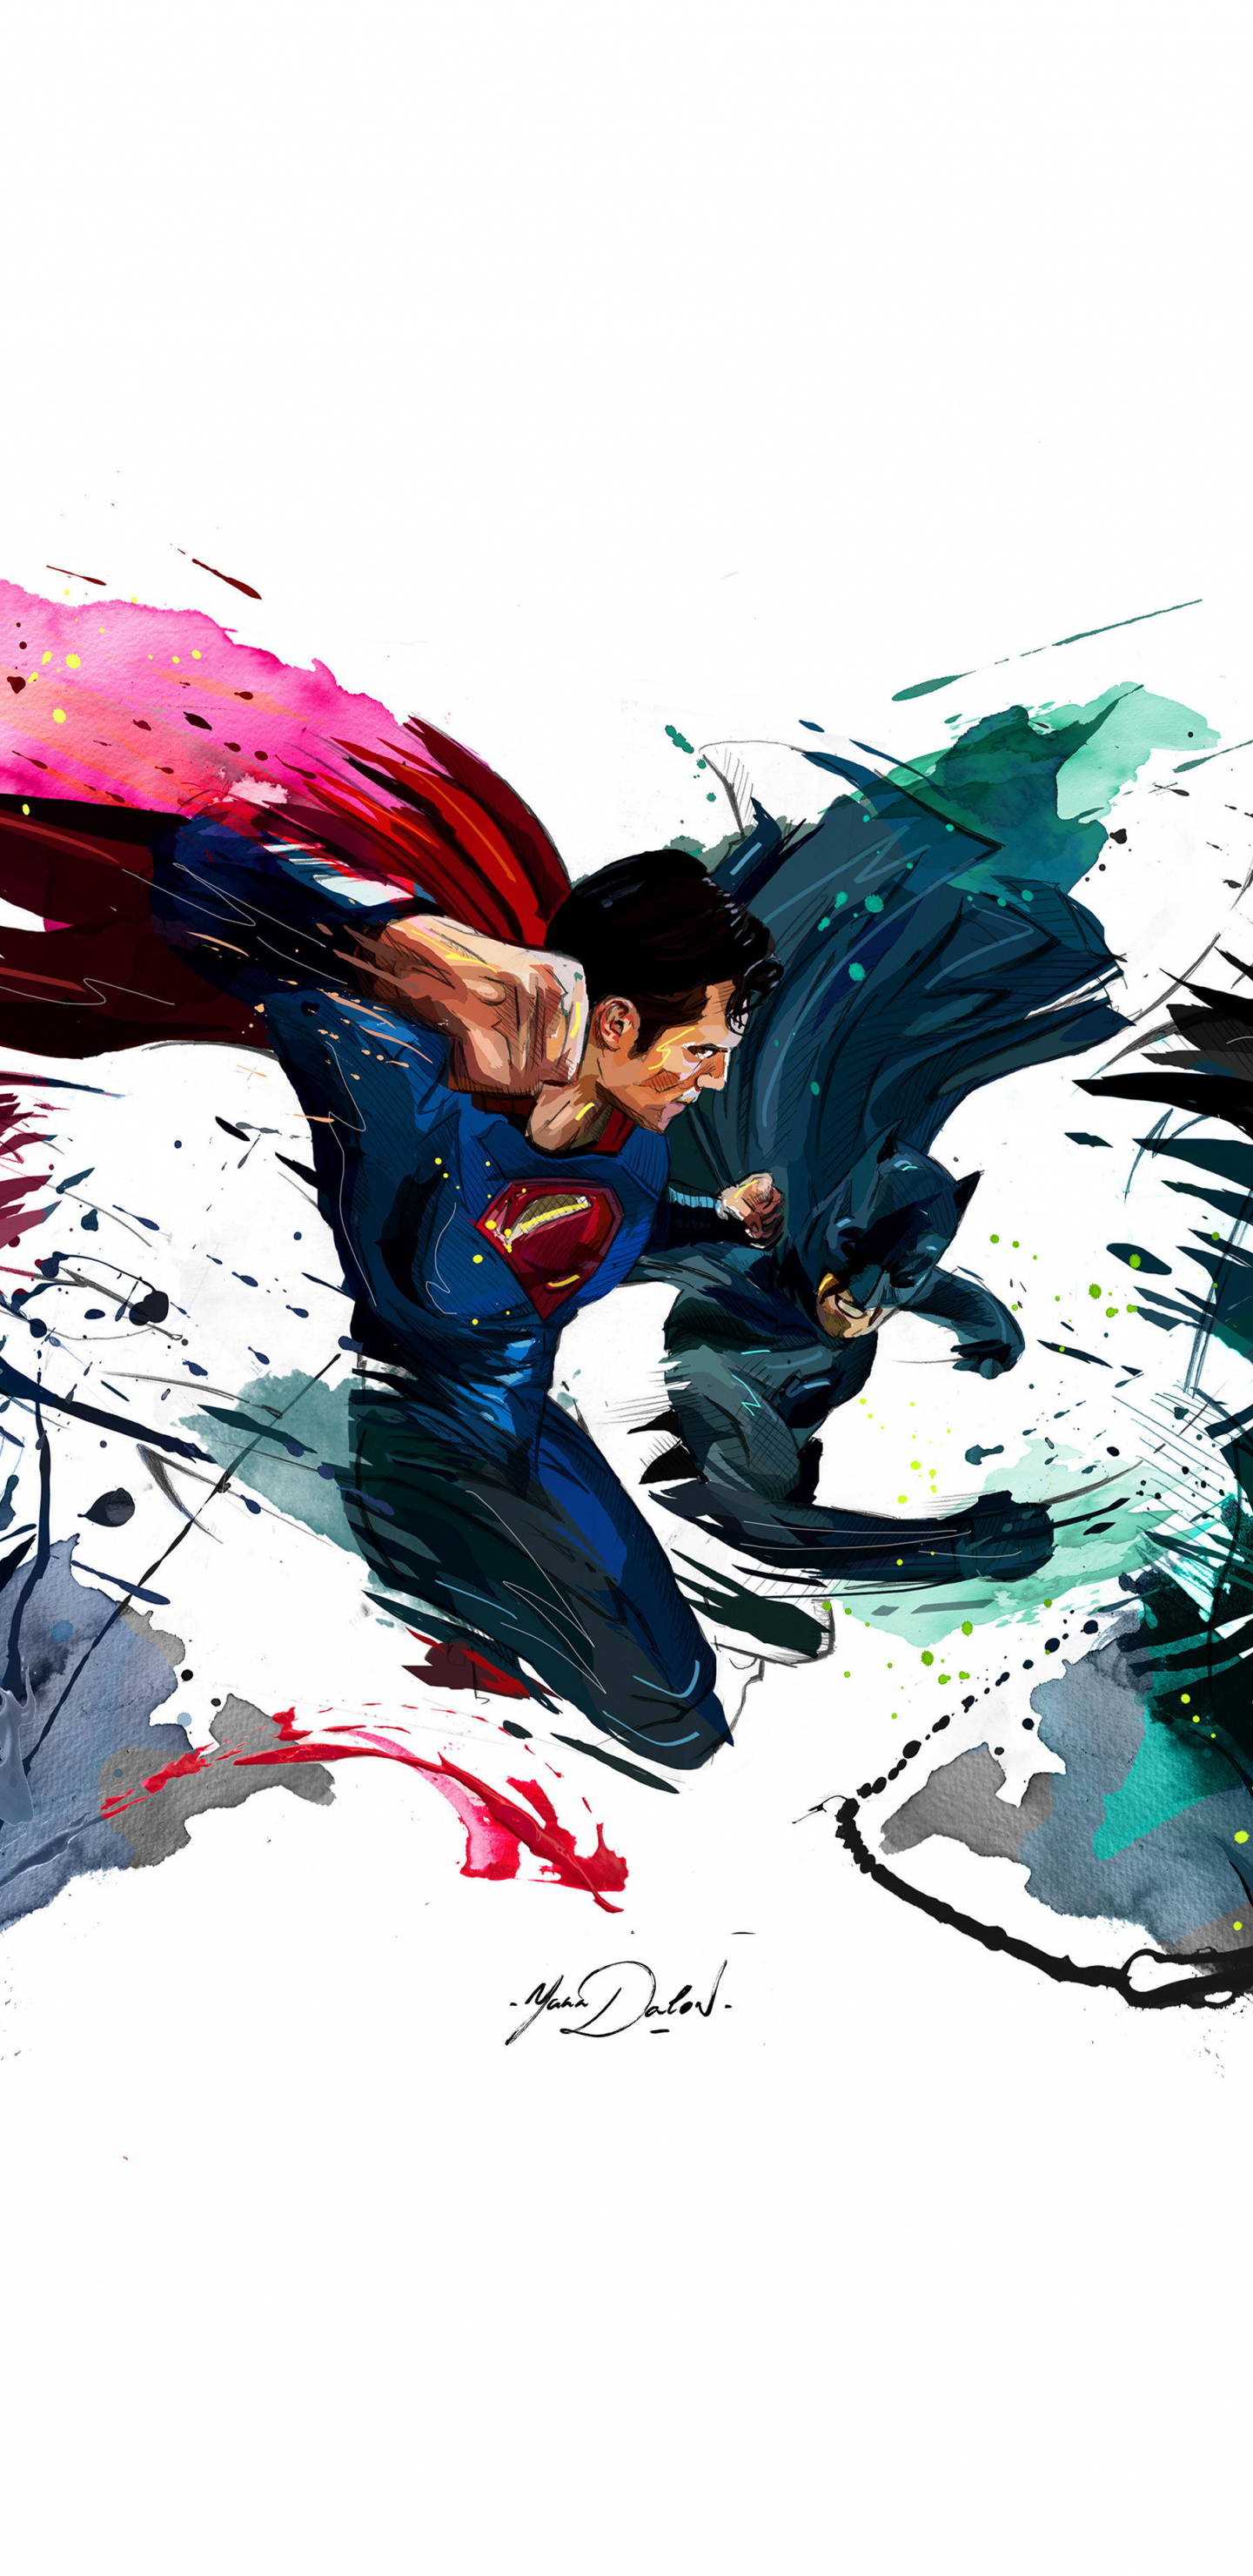 Batman vs superman, 4k, sketch artwork, 1440x2960 wallpaper